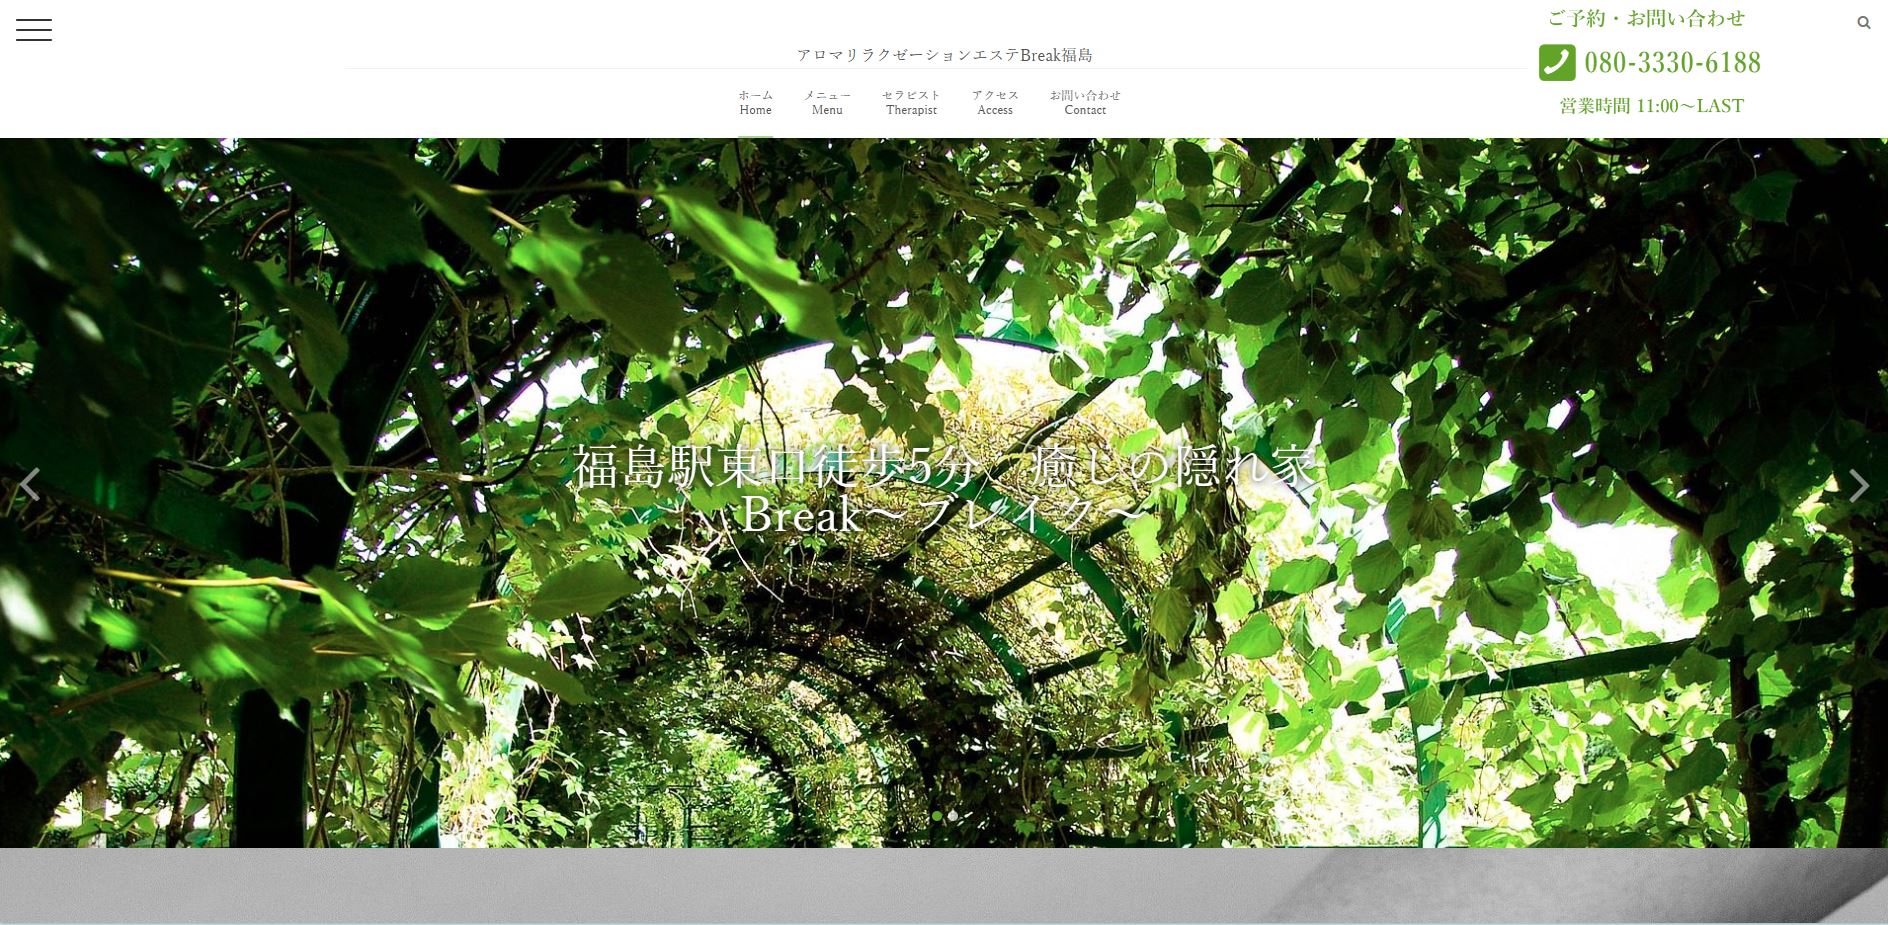 アロマリラクゼーションエステBreak福島のトップページ画像